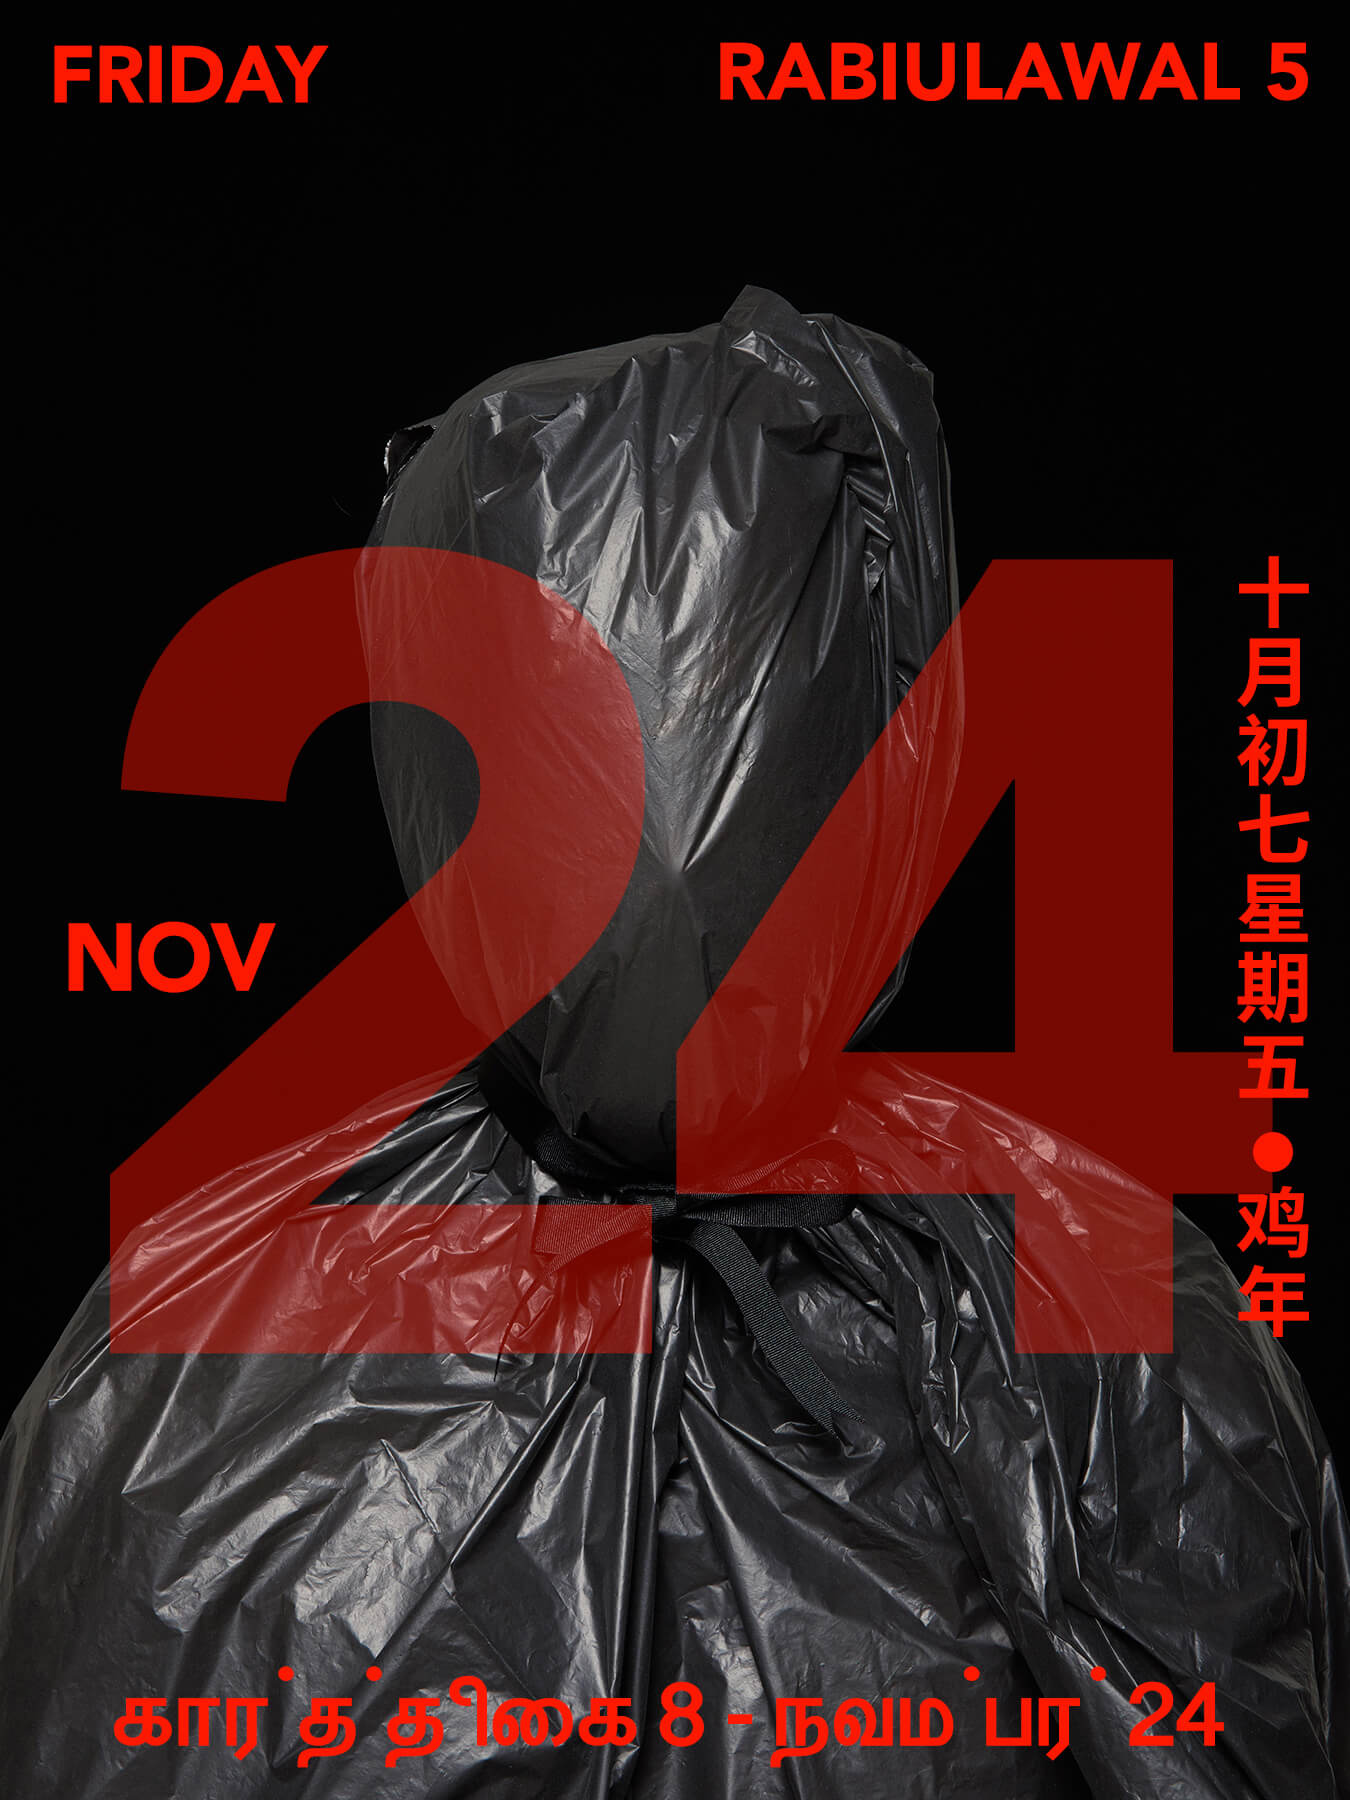 24 Nov 2017 Derong is wrapped in black garbage bags